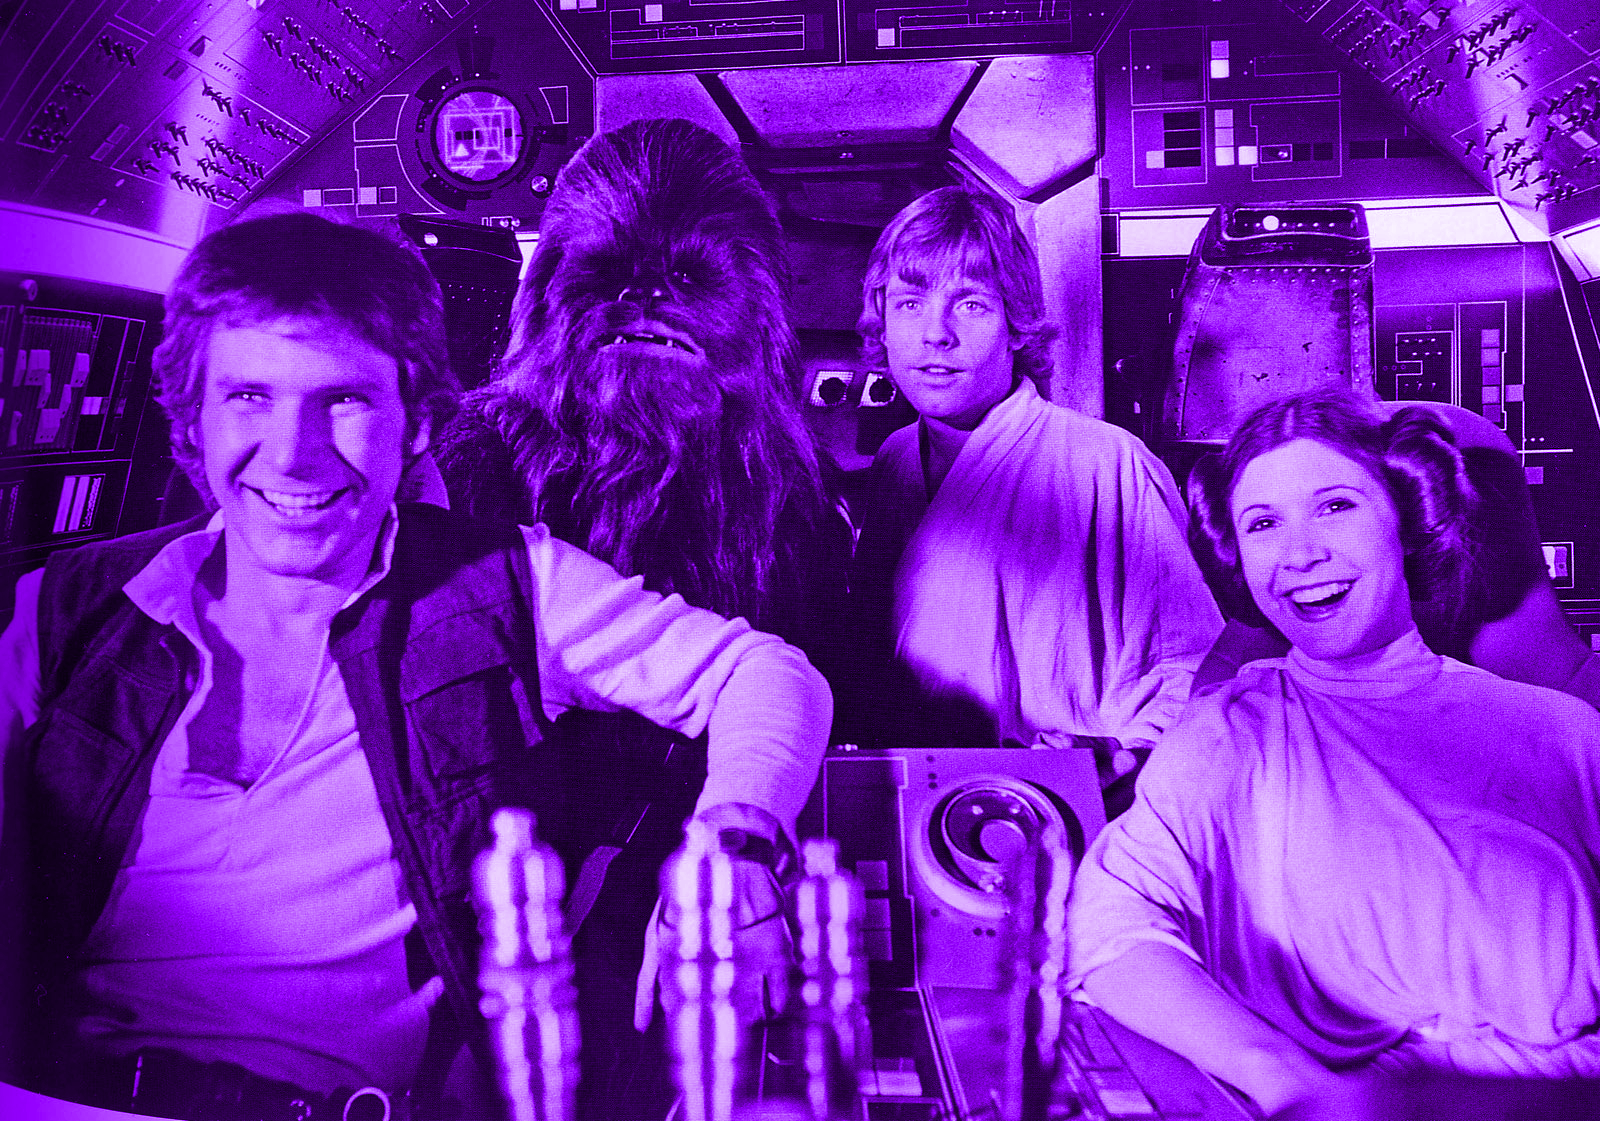 Download Movie Star Wars  Wallpaper